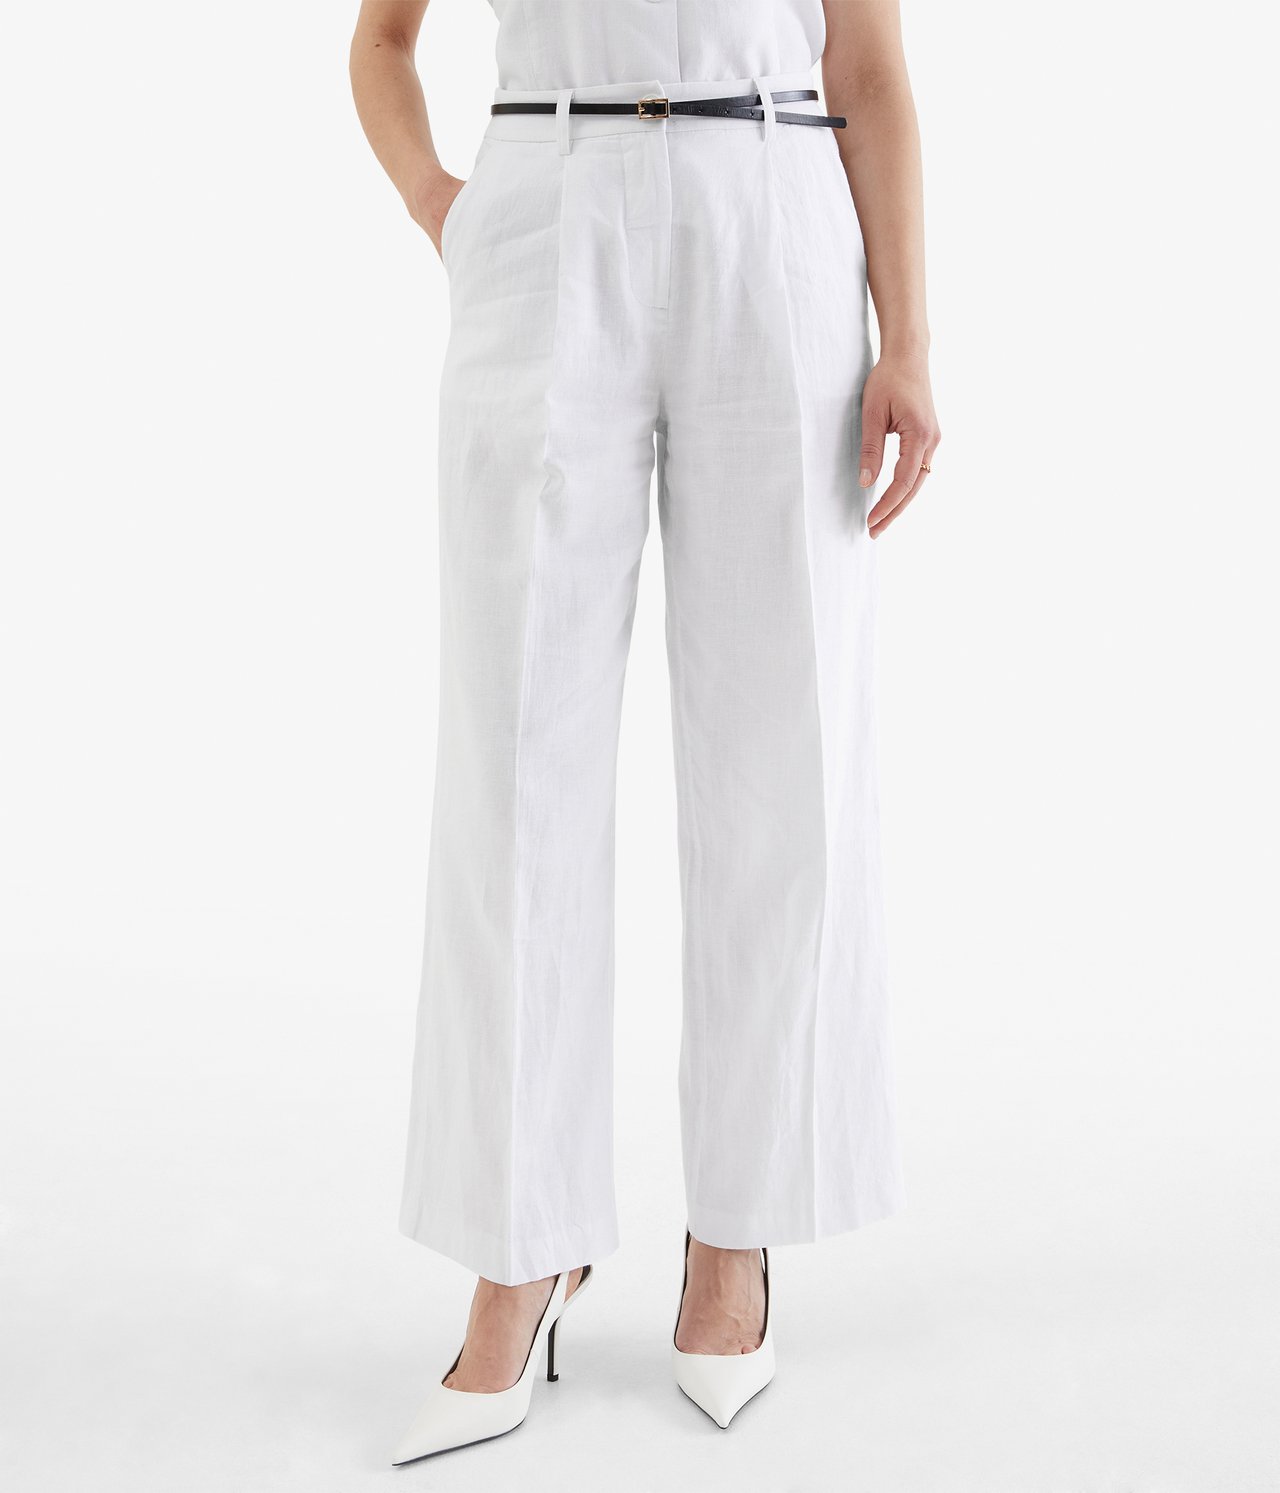 Eleganckie spodnie - Biały - 174cm / Storlek: S - 1